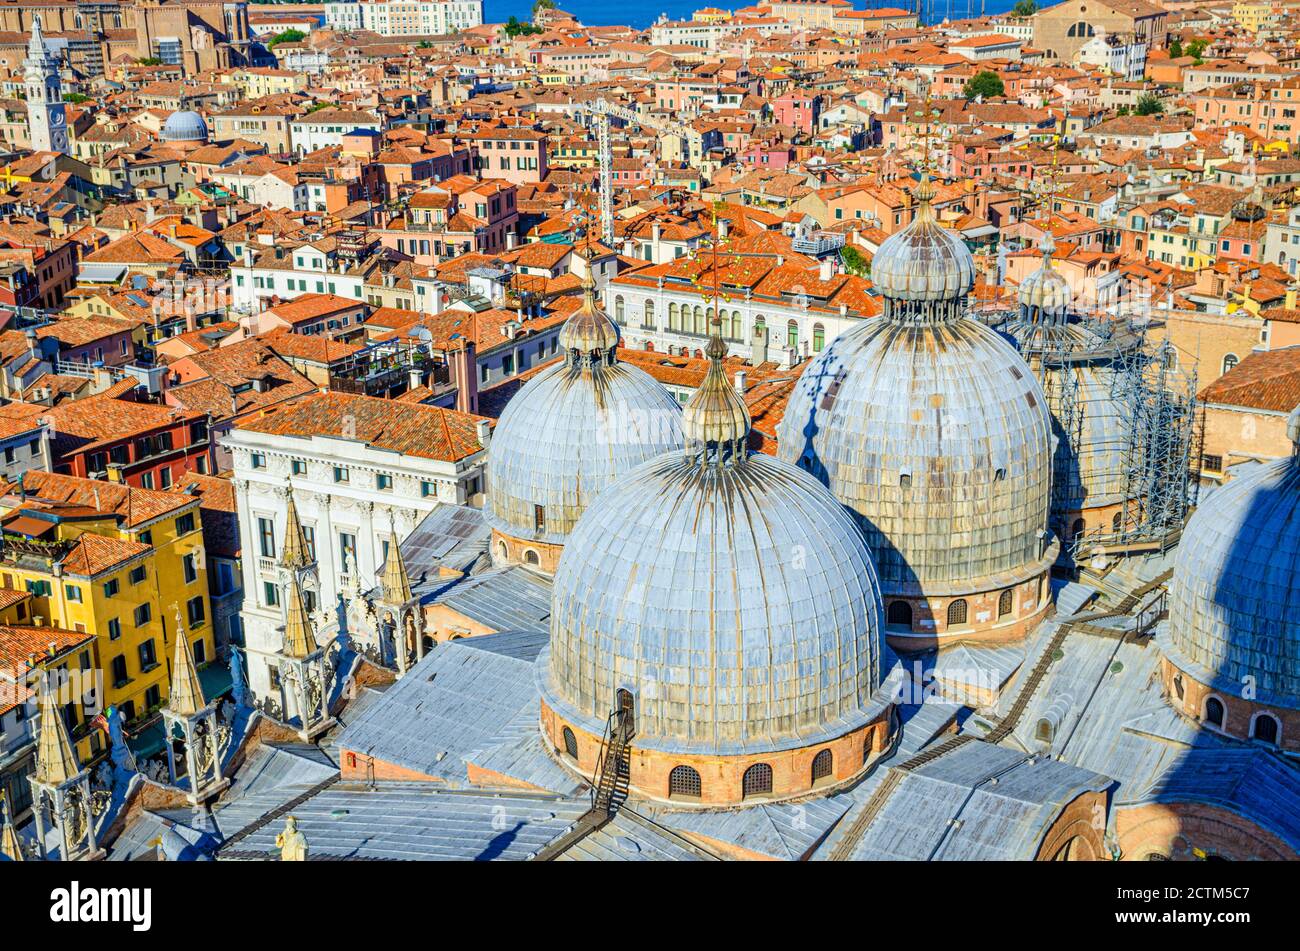 Veduta aerea dall'alto del centro storico di Venezia con le cupole della Basilica di San Marco o la Cattedrale di San Marco, la chiesa cattolica romana e i tetti rossi, la Regione Veneto, l'Italia settentrionale Foto Stock